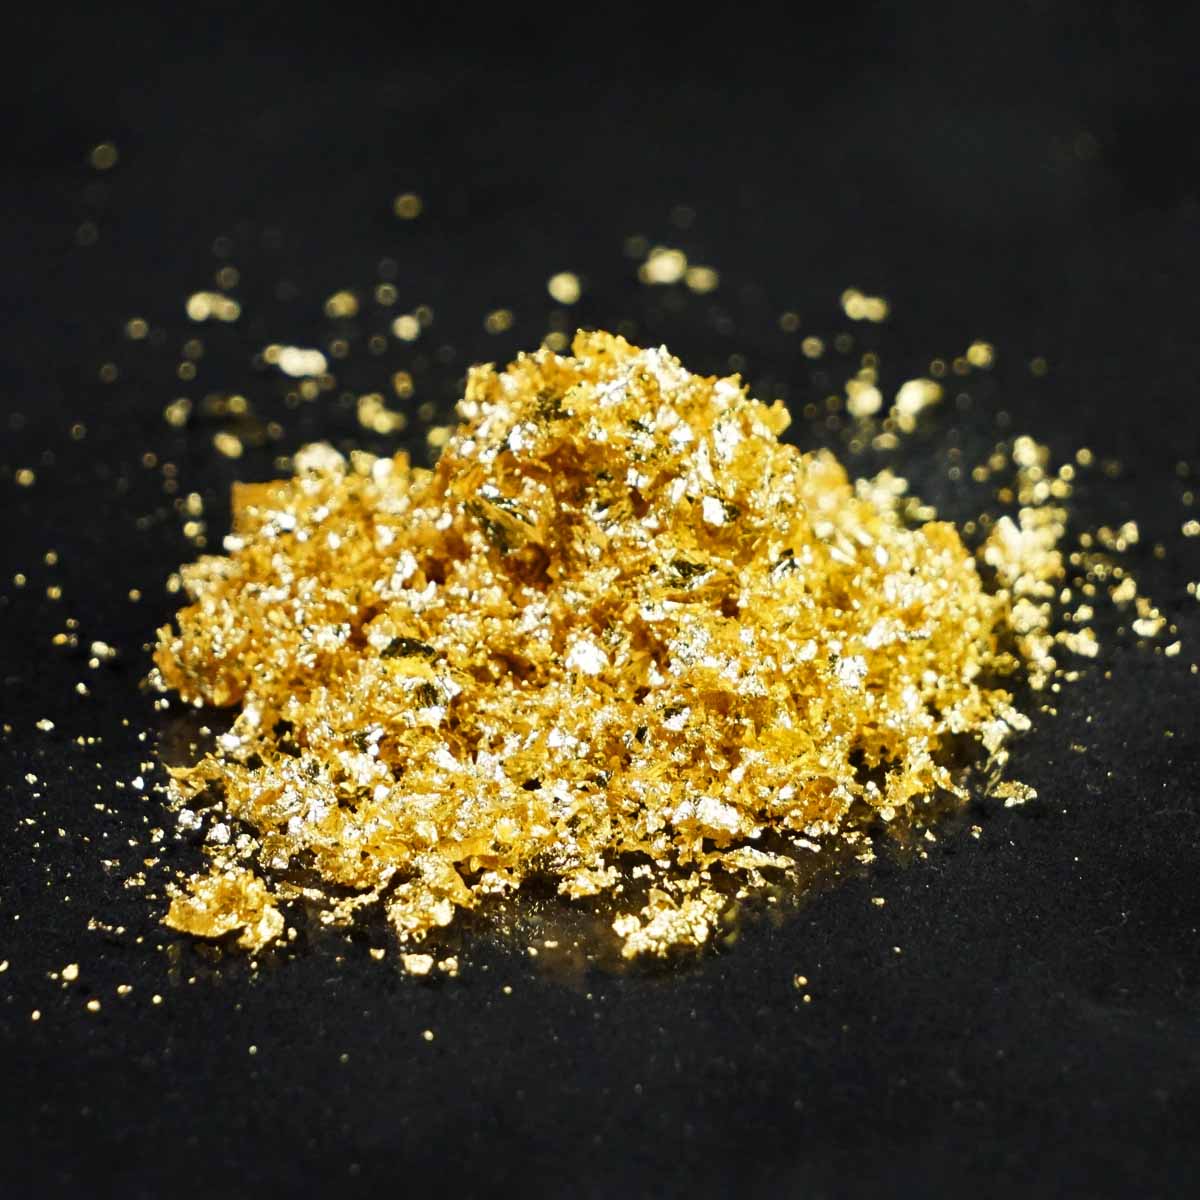 Metallic Flakes - Yellow Gold